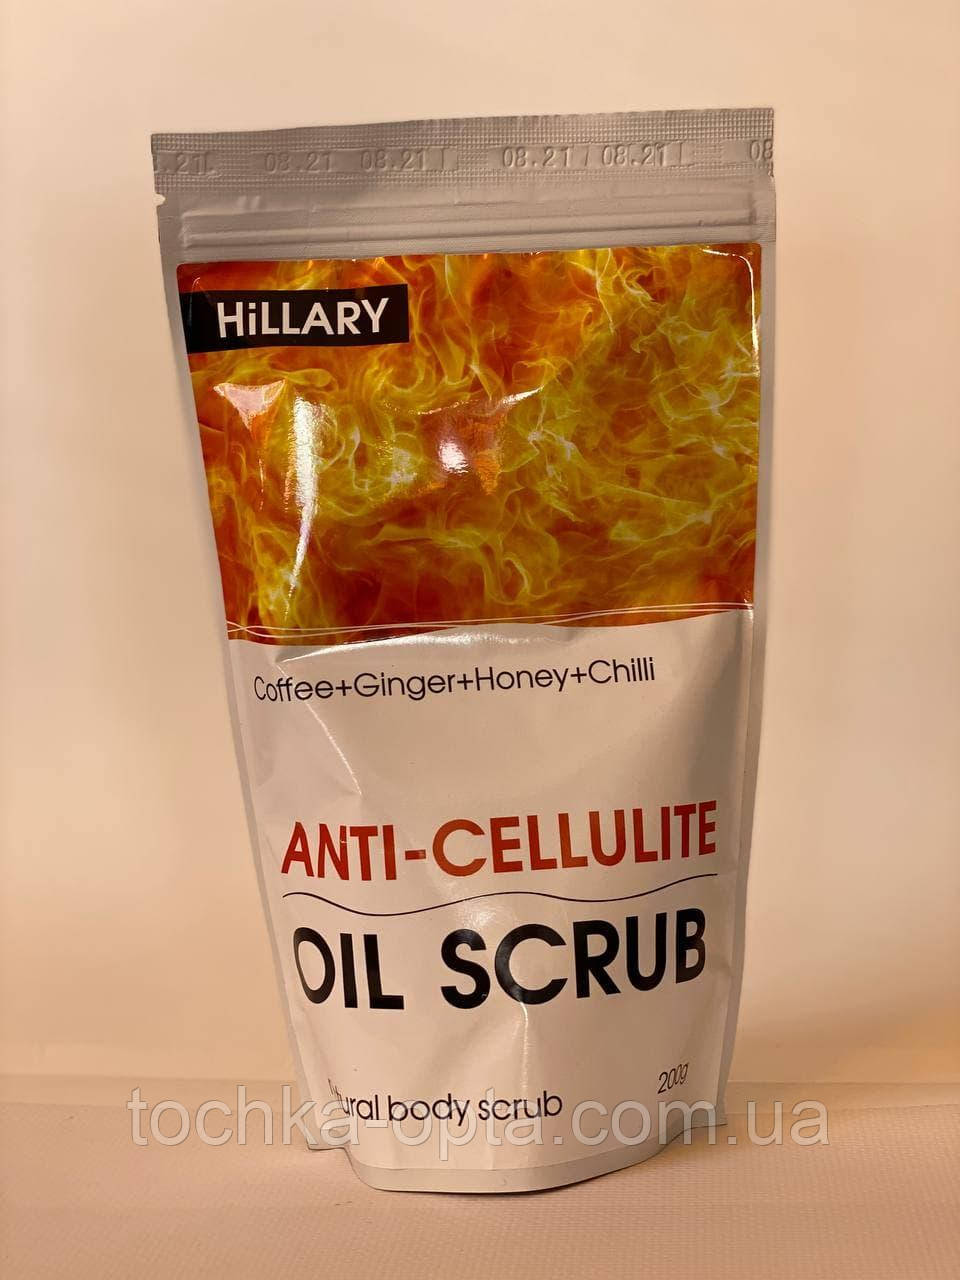 Антицелюлітний розігрівальний скраб для тіла Hillary Anti-cellulite Oil Scrub, 200 г